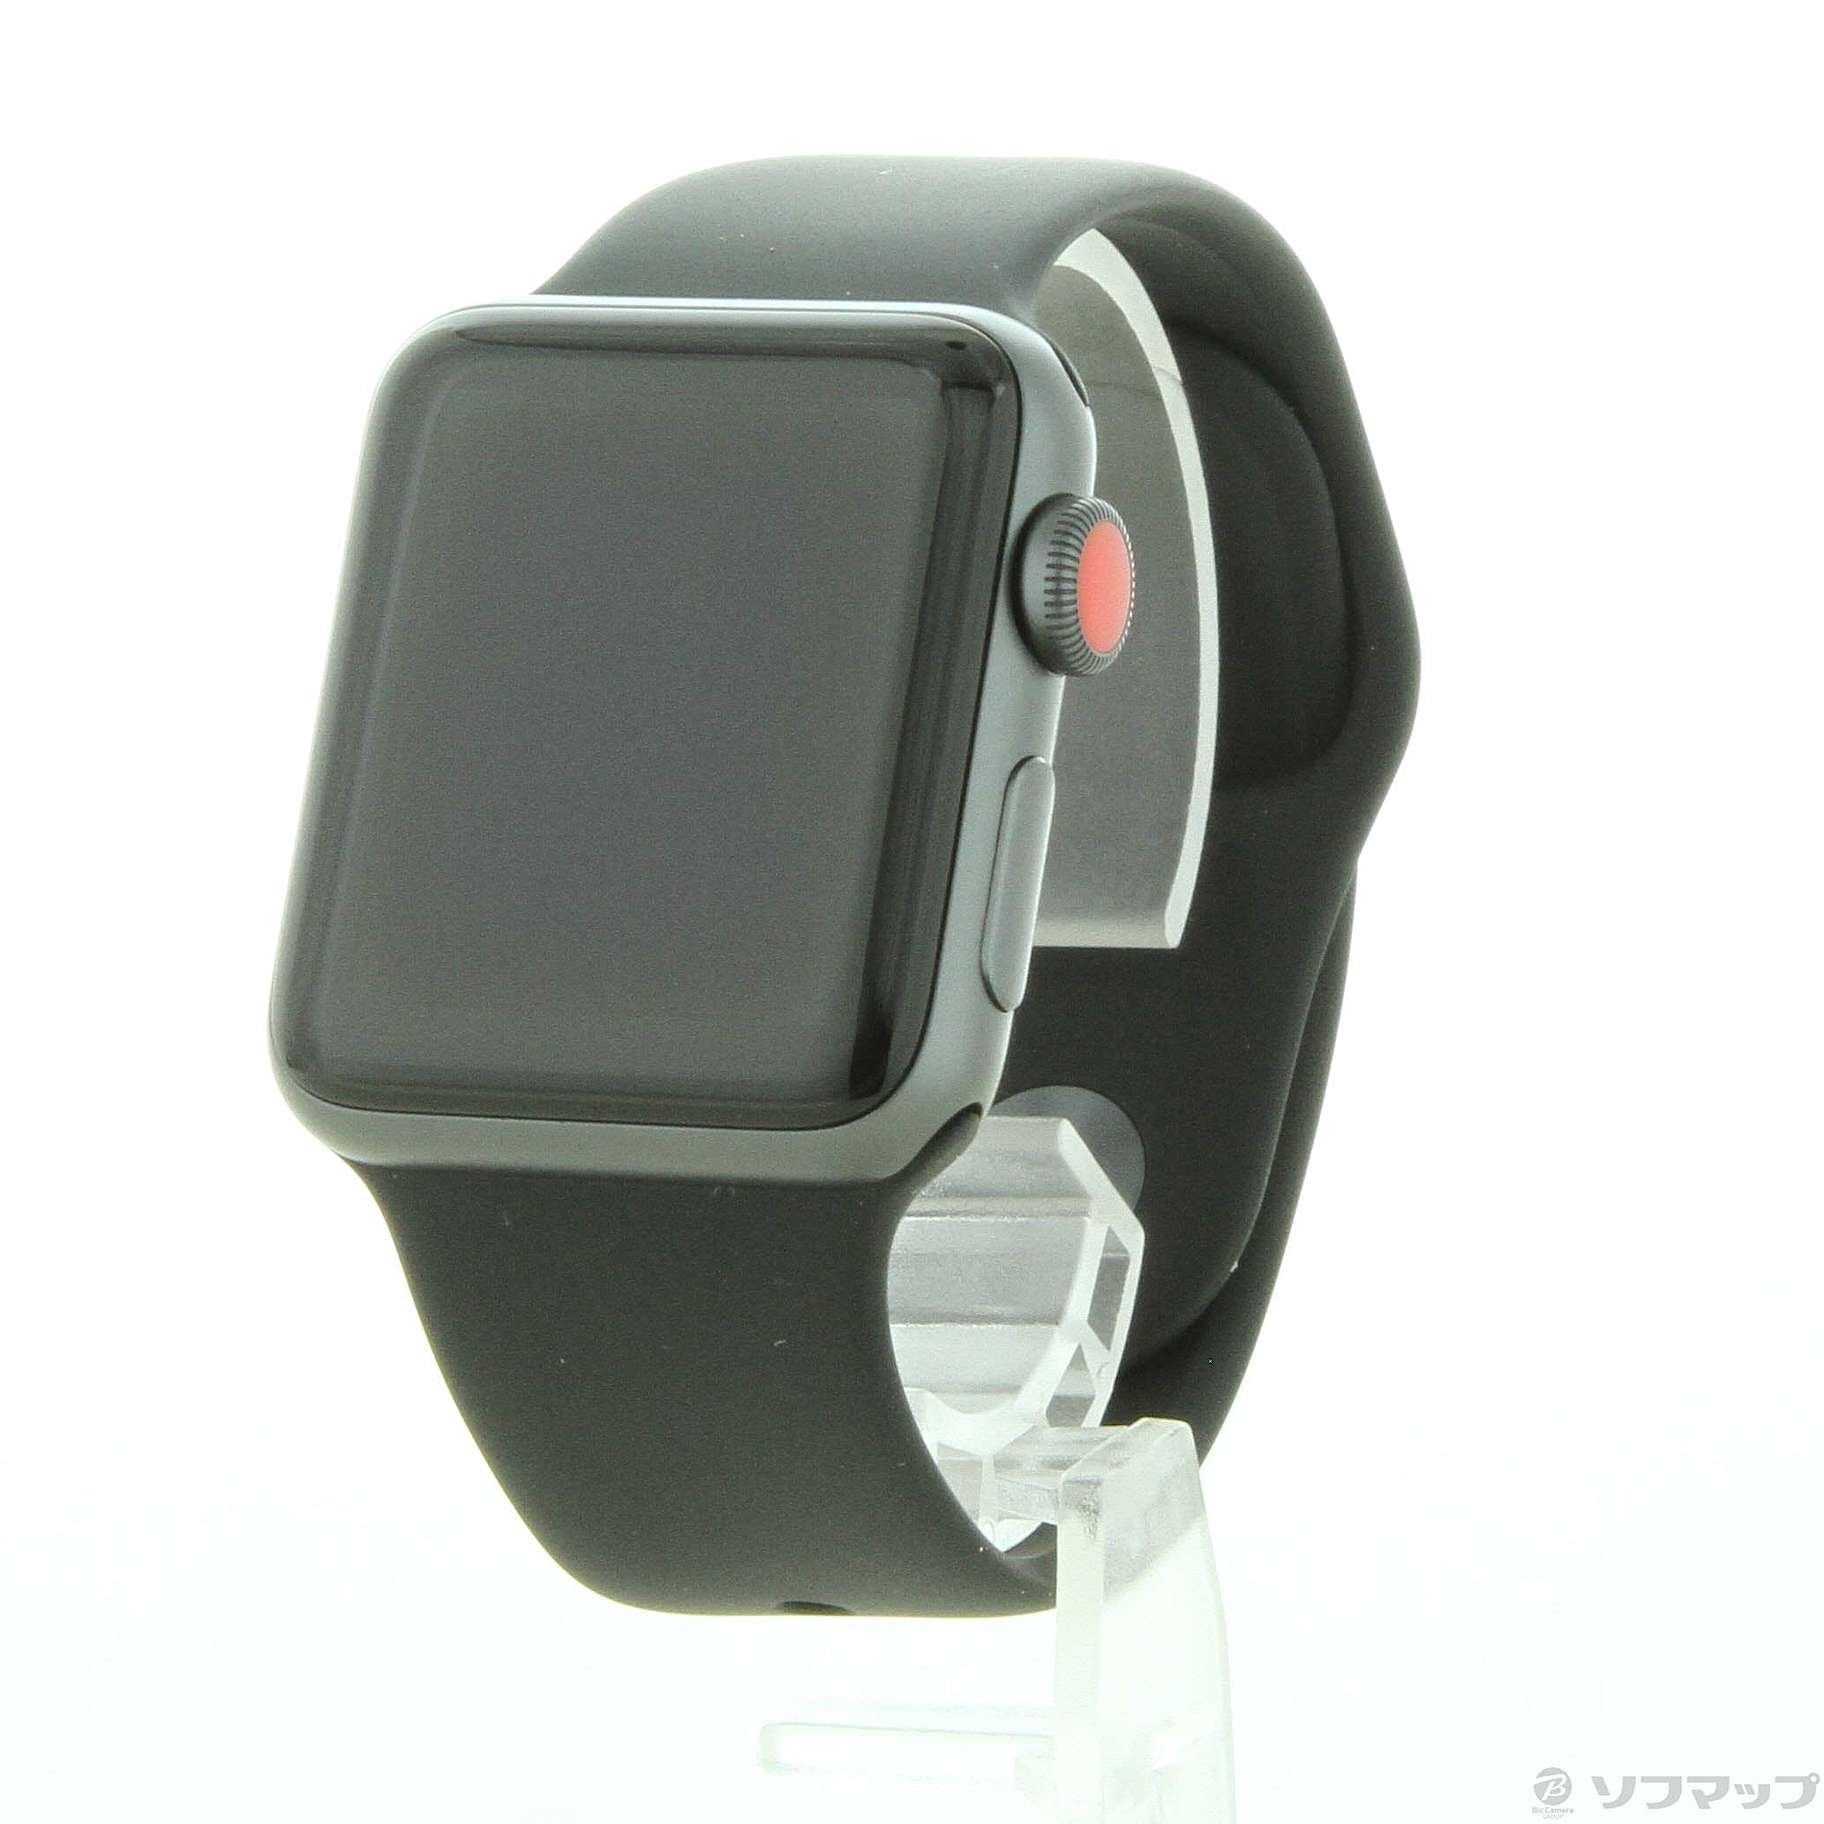 【中古】〔展示品〕 Apple Watch Series 3 GPS + Cellular 38mm スペースグレイアルミニウムケース